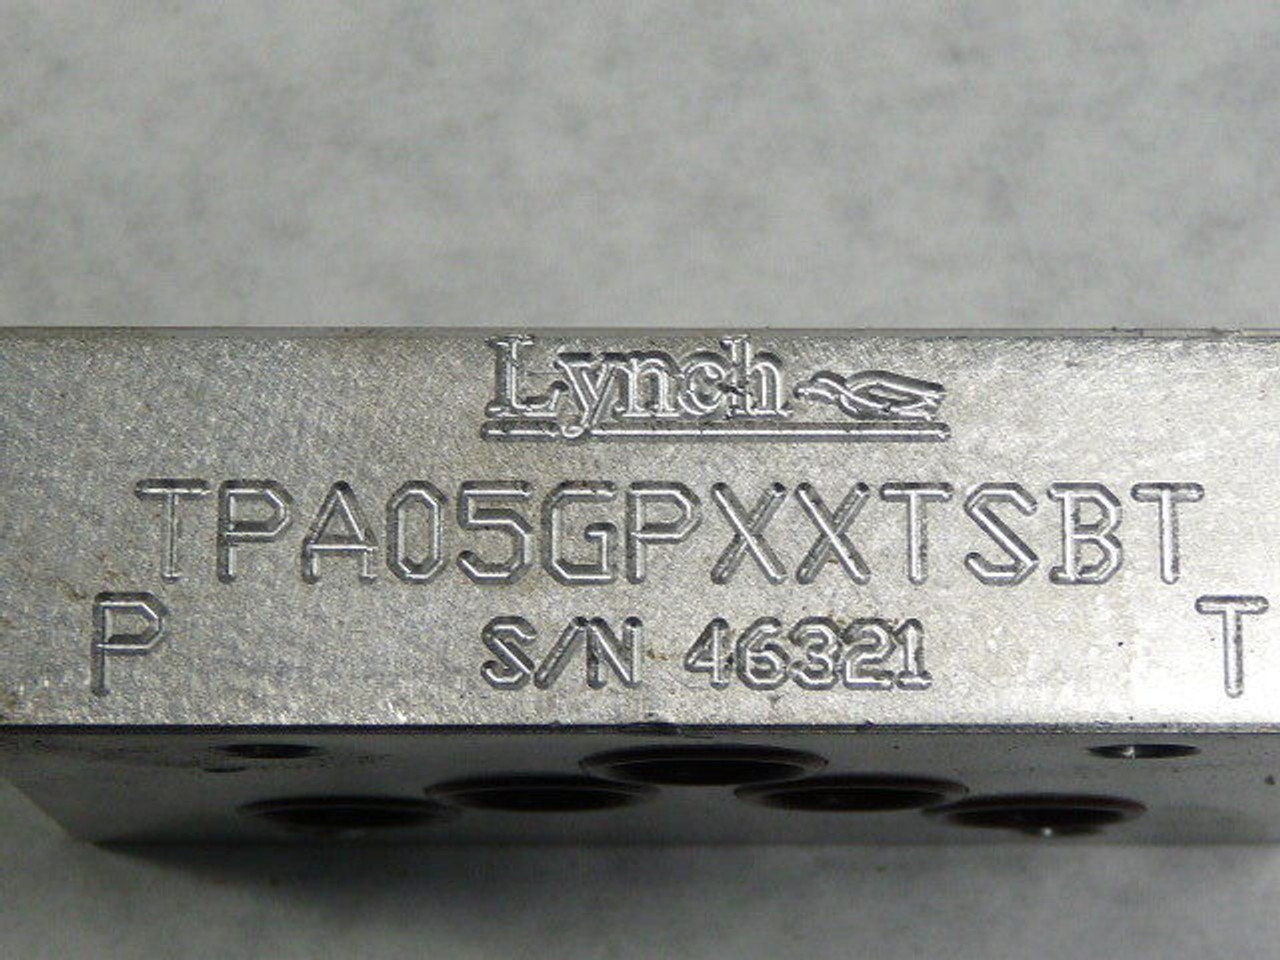 Lynch TPA05GPXXTSBT Fluid Control Bar Manifold ! NEW !